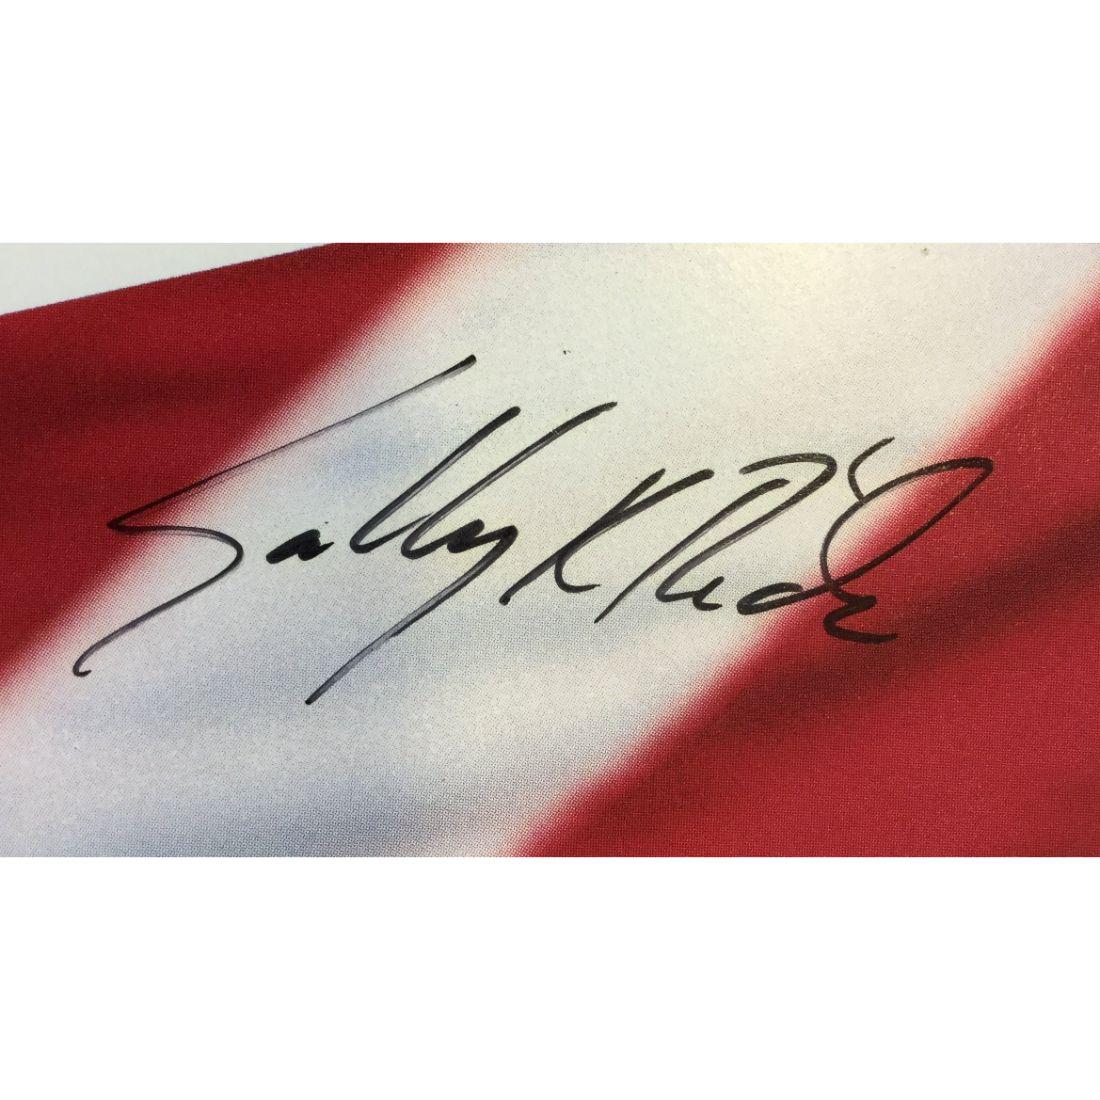 Sally Ride NASA signiertes Foto

Offizielles, signiertes Farbfoto (8 x 10 Zoll) der NASA von Sally Ride (1951-2012) - der ersten US-Frau im Weltraum und der dritten insgesamt.

Ride ist in ihrer NASA-Uniform mit einem STS-7-Aufnäher auf ihrem Hemd